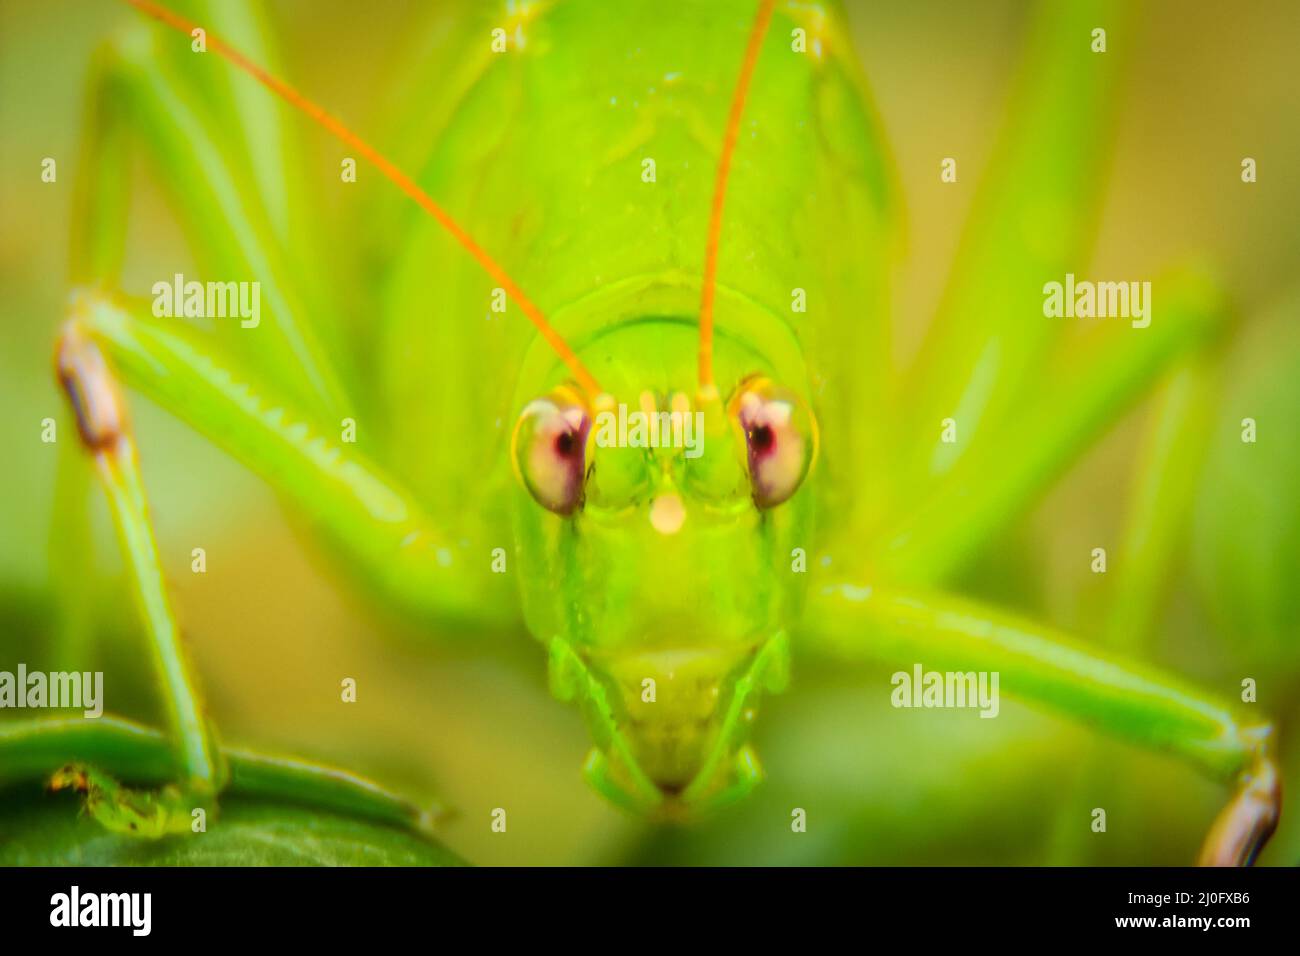 Carino a lungo cornuto cavallette o Tettigoniidae o leafhopper appollaiate su foglie verdi e sfondo verde Foto Stock